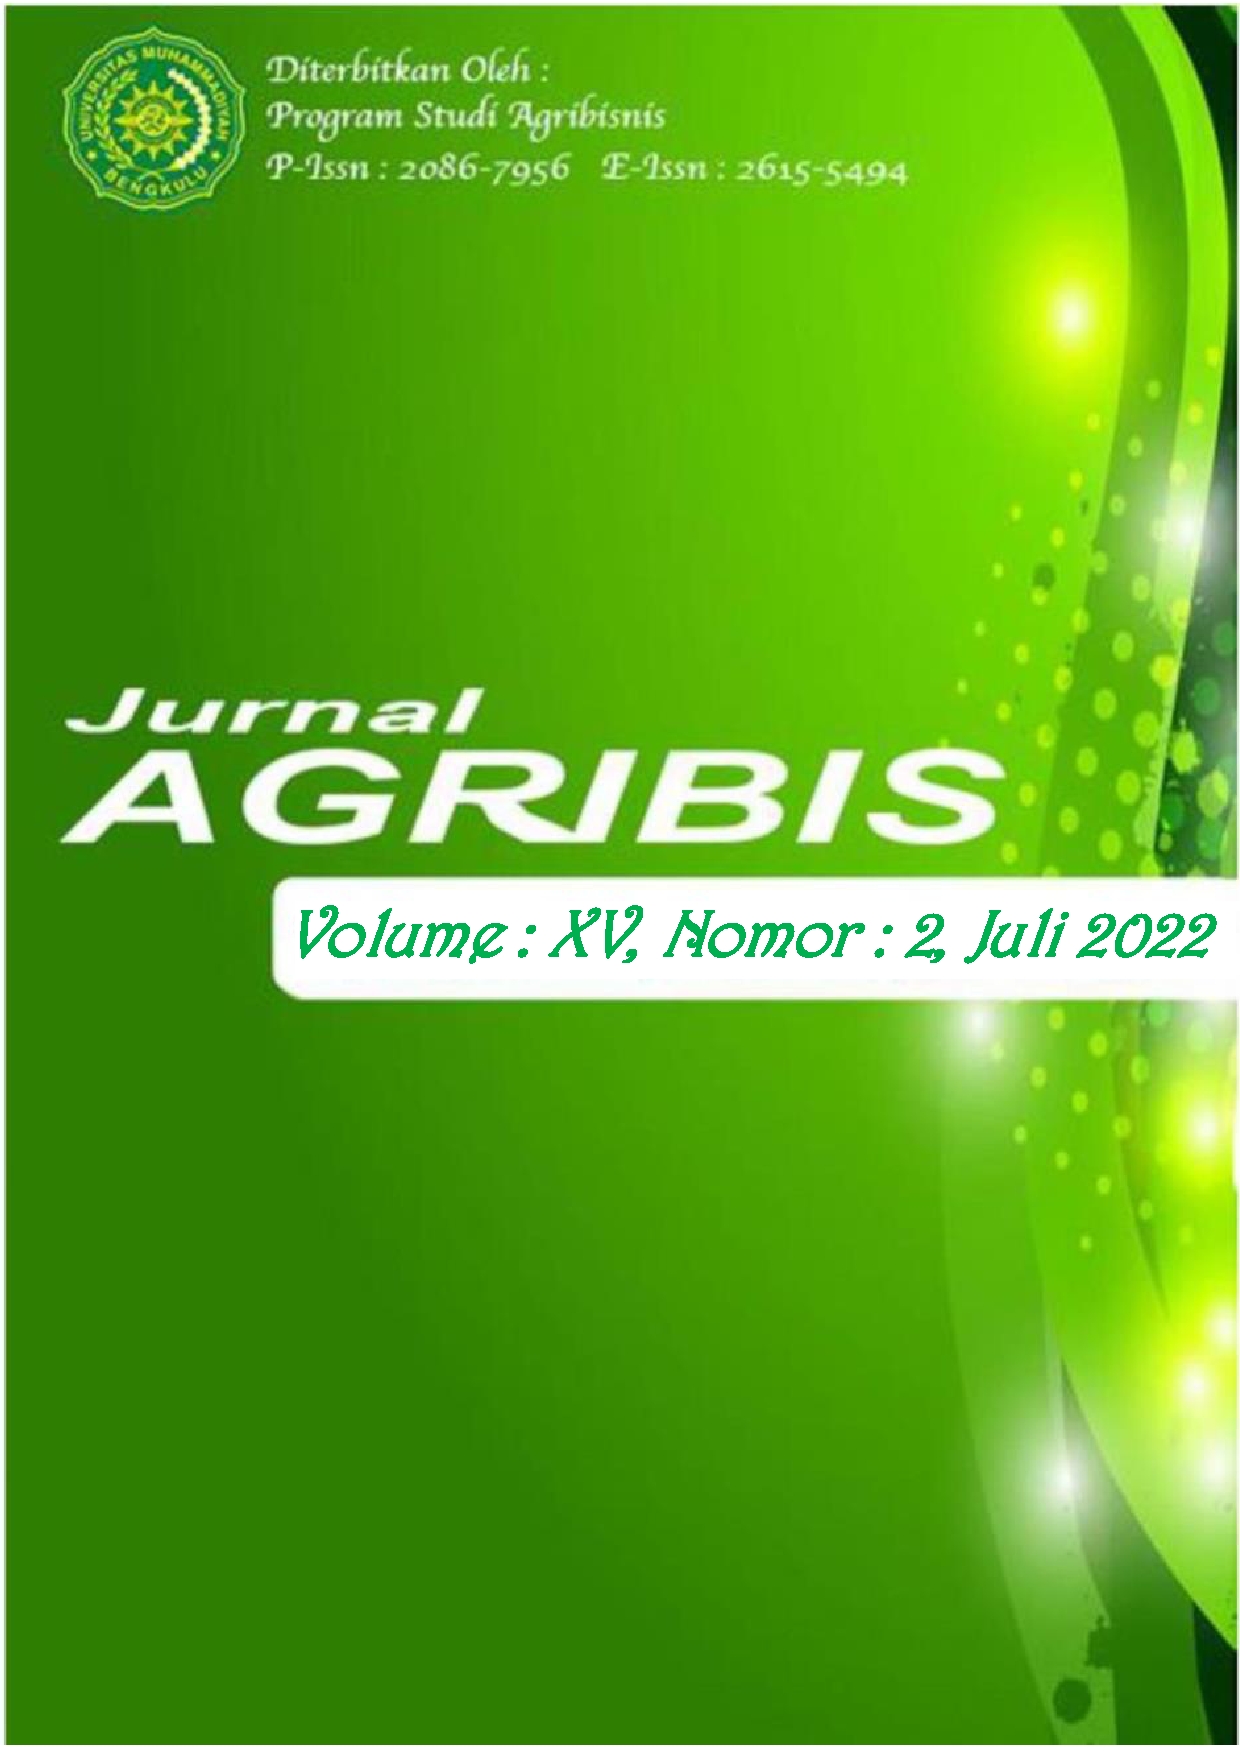 					View Vol. 15 No. 2 (2022): JURNAL AGRIBIS
				